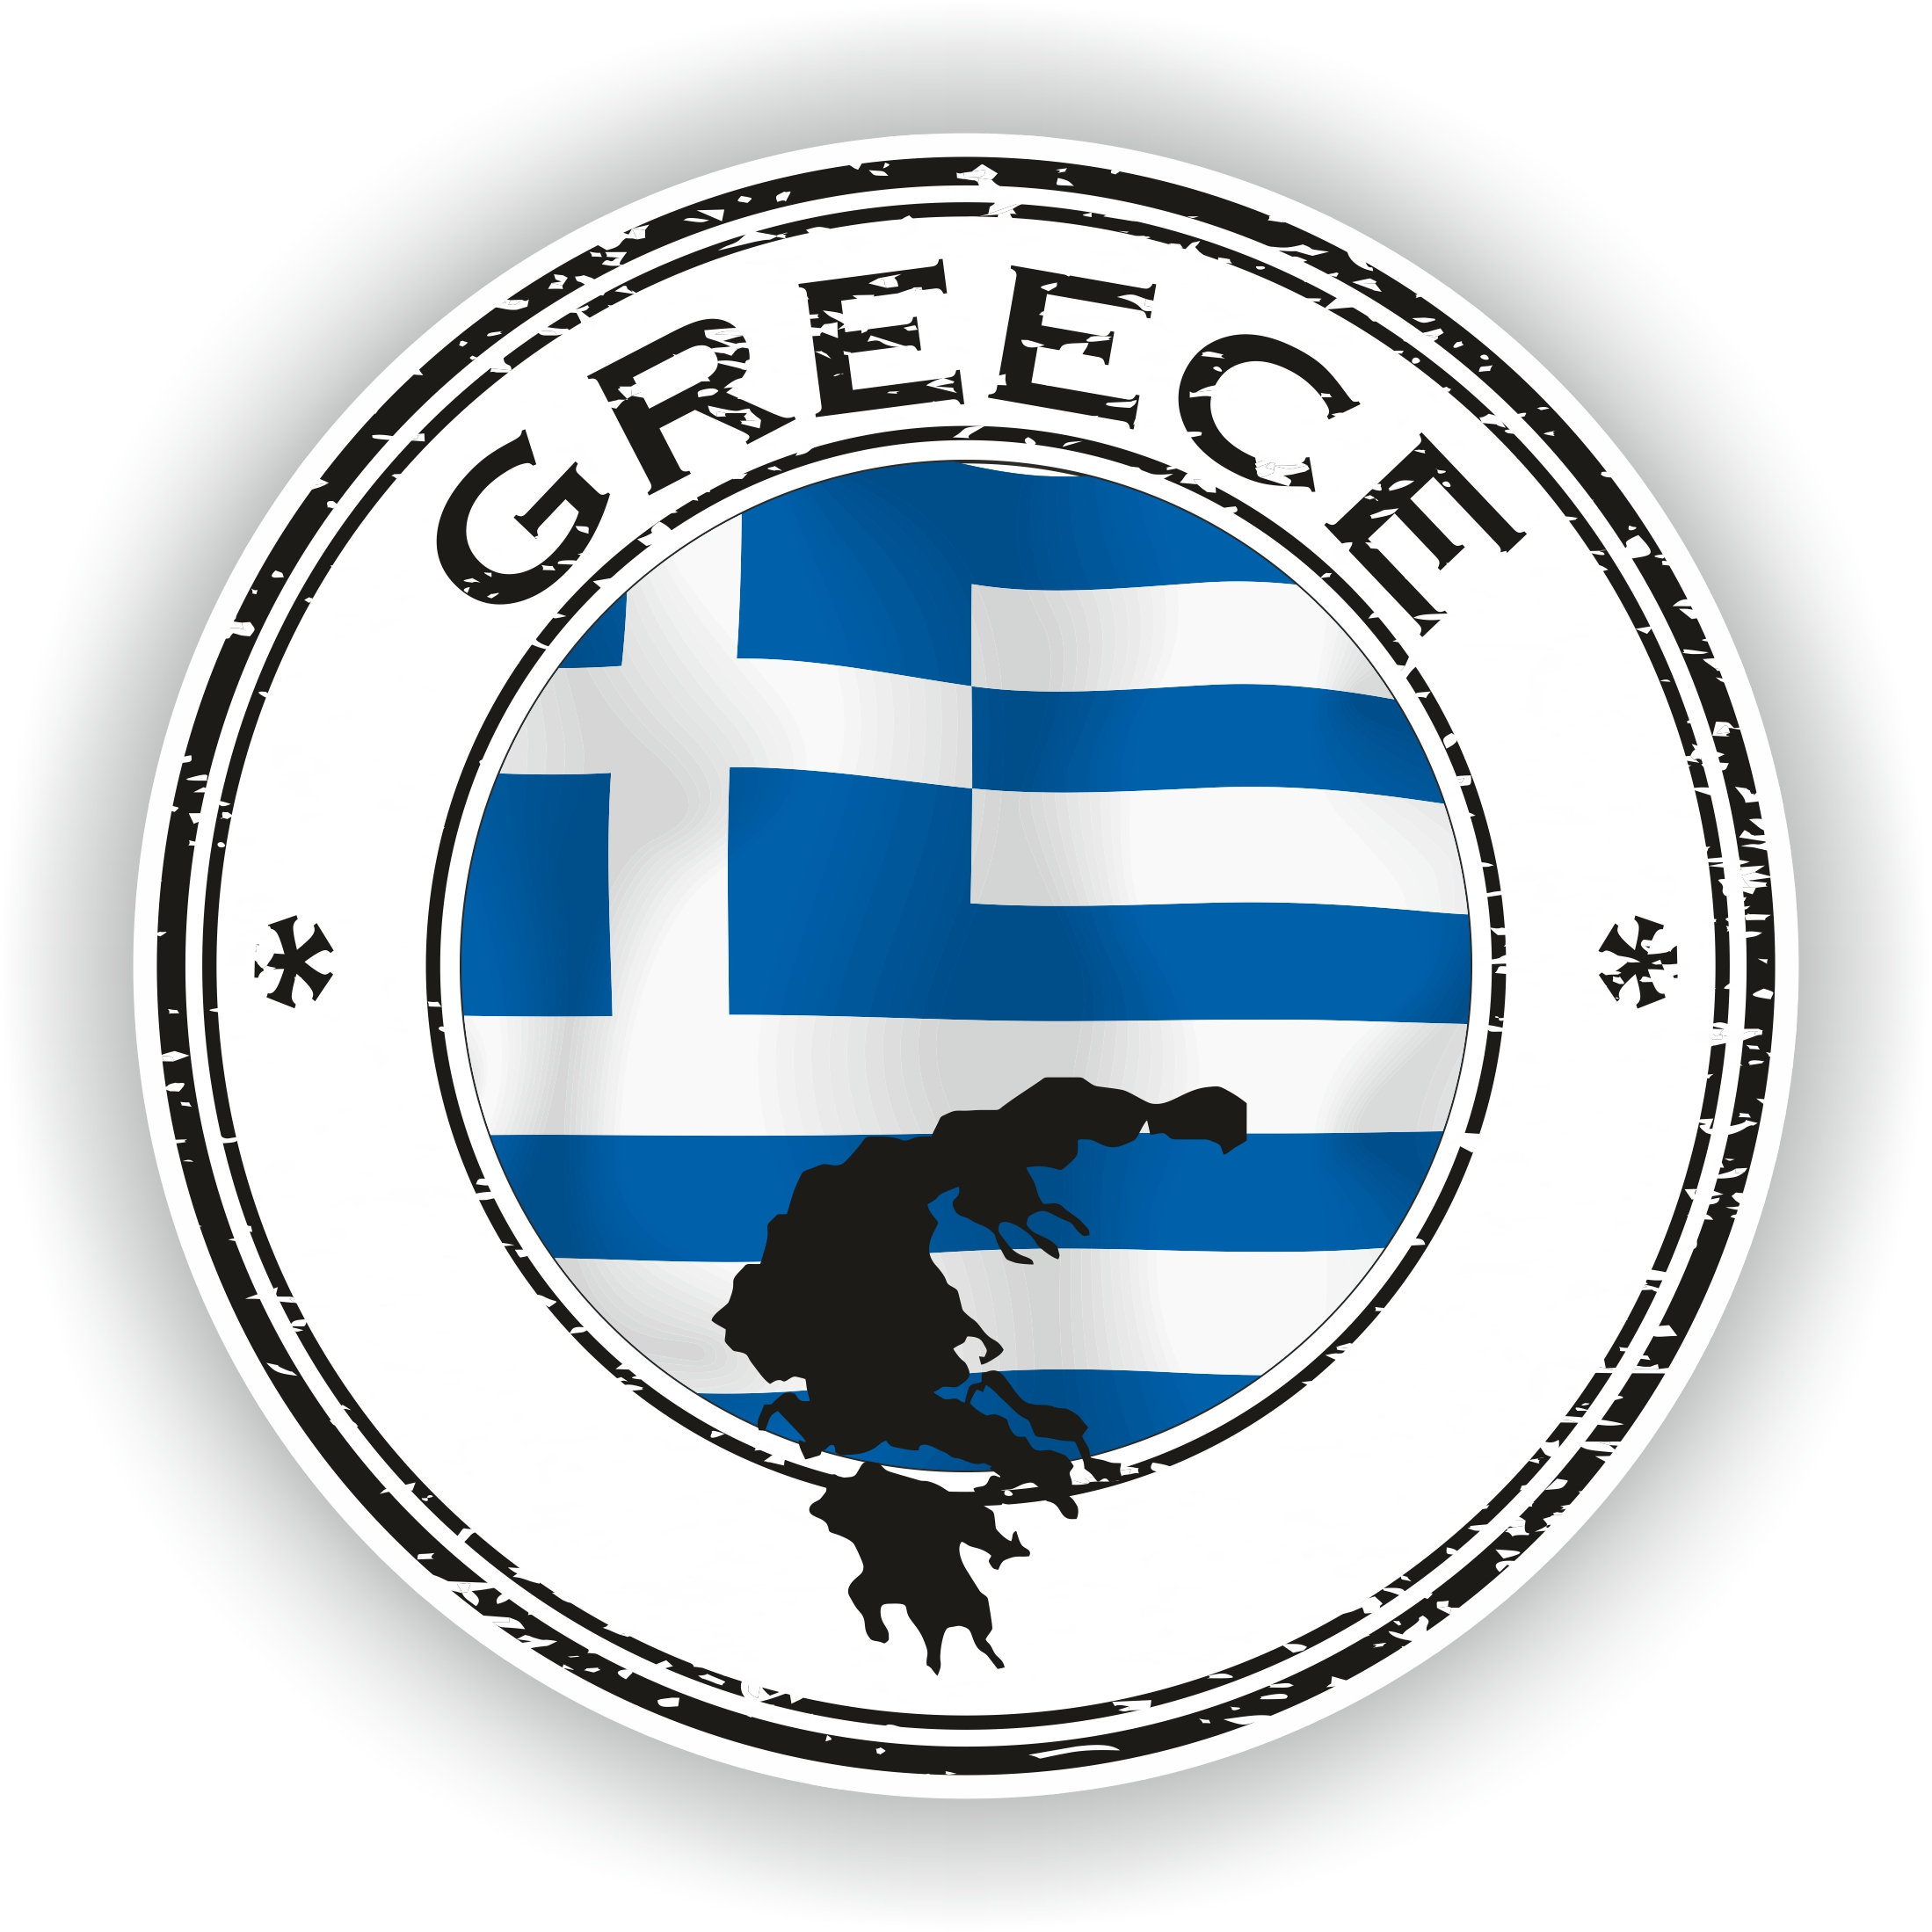 Griechenland-Flagge, Fahrt zum Berg … – Bild kaufen – 70325791